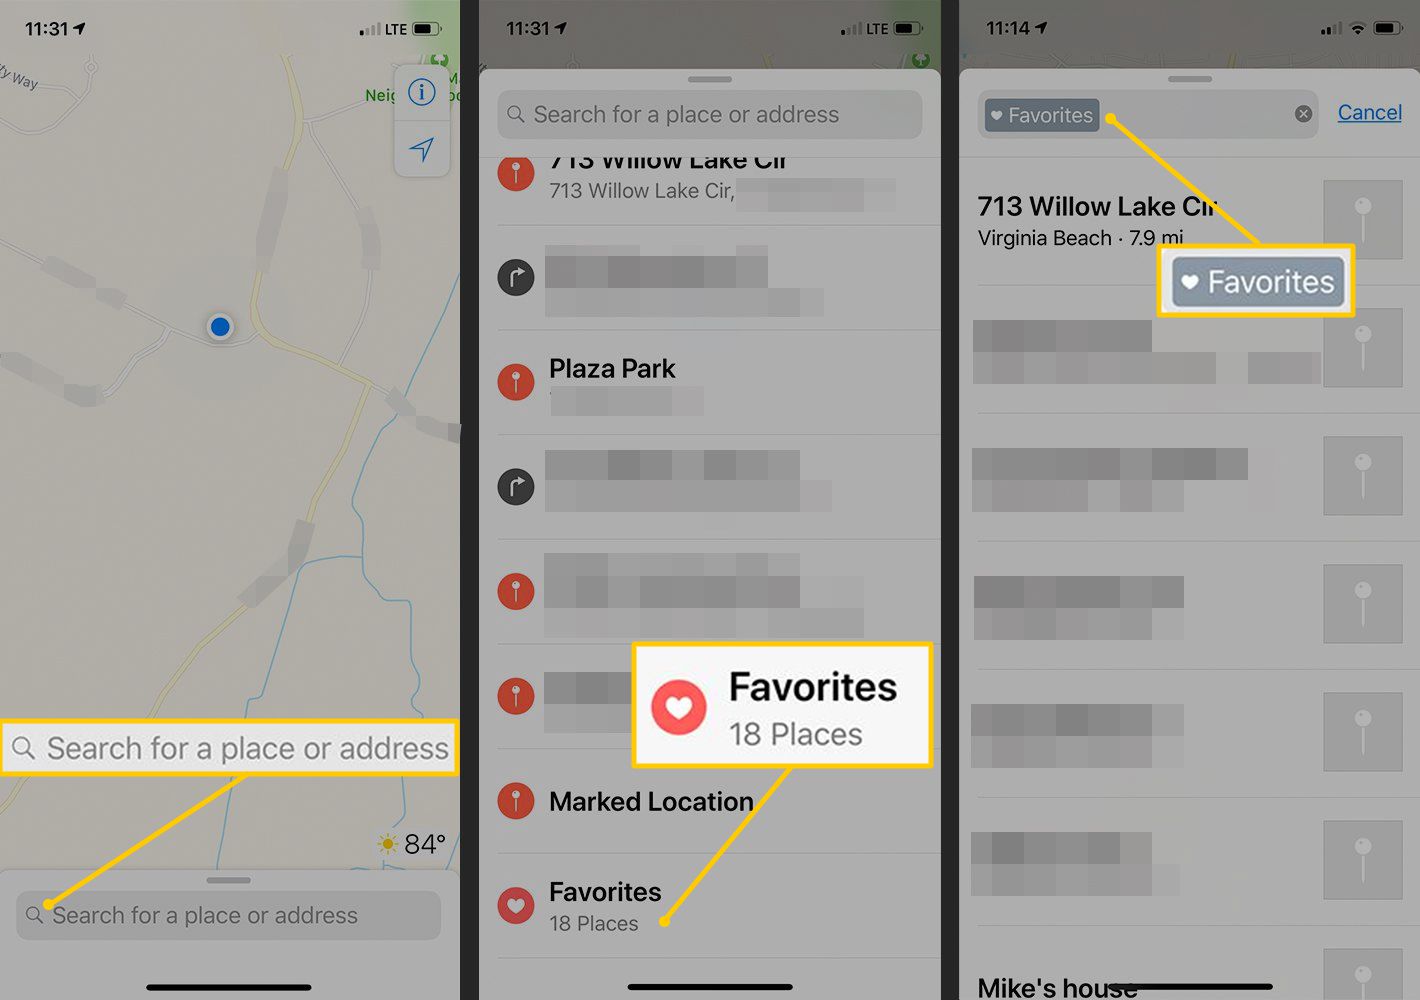 Vyhledávací pole, Oblíbená místa, Oblíbená značka v Mapách iOS